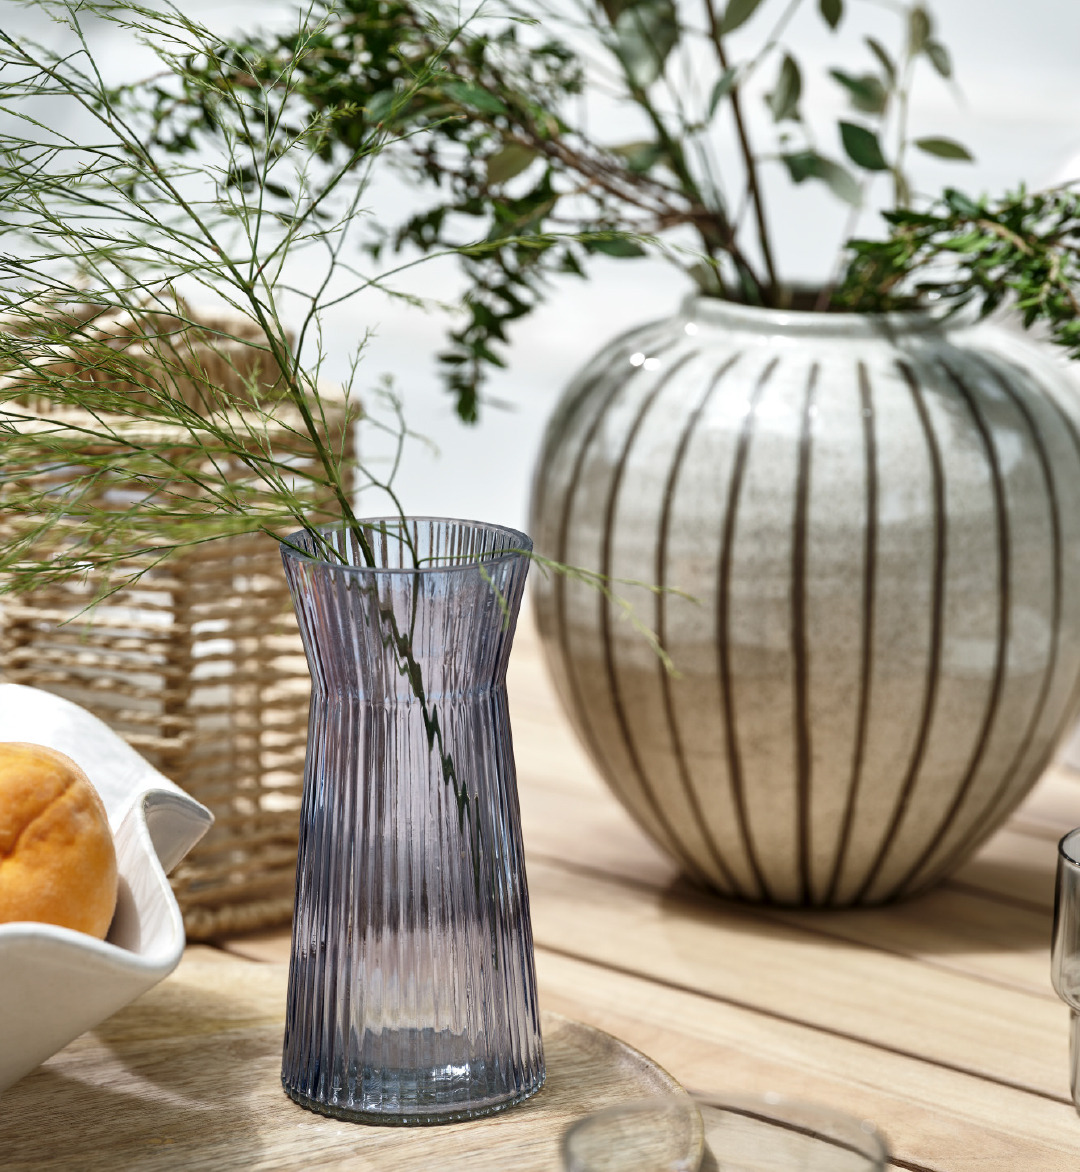 Скляна ваза HILBERT та керамічна ваза SOFUS на садовому столі - чудощві деталі, що додають атмосфери свіжості та скандинавського стилю вашому затишному майданчику.